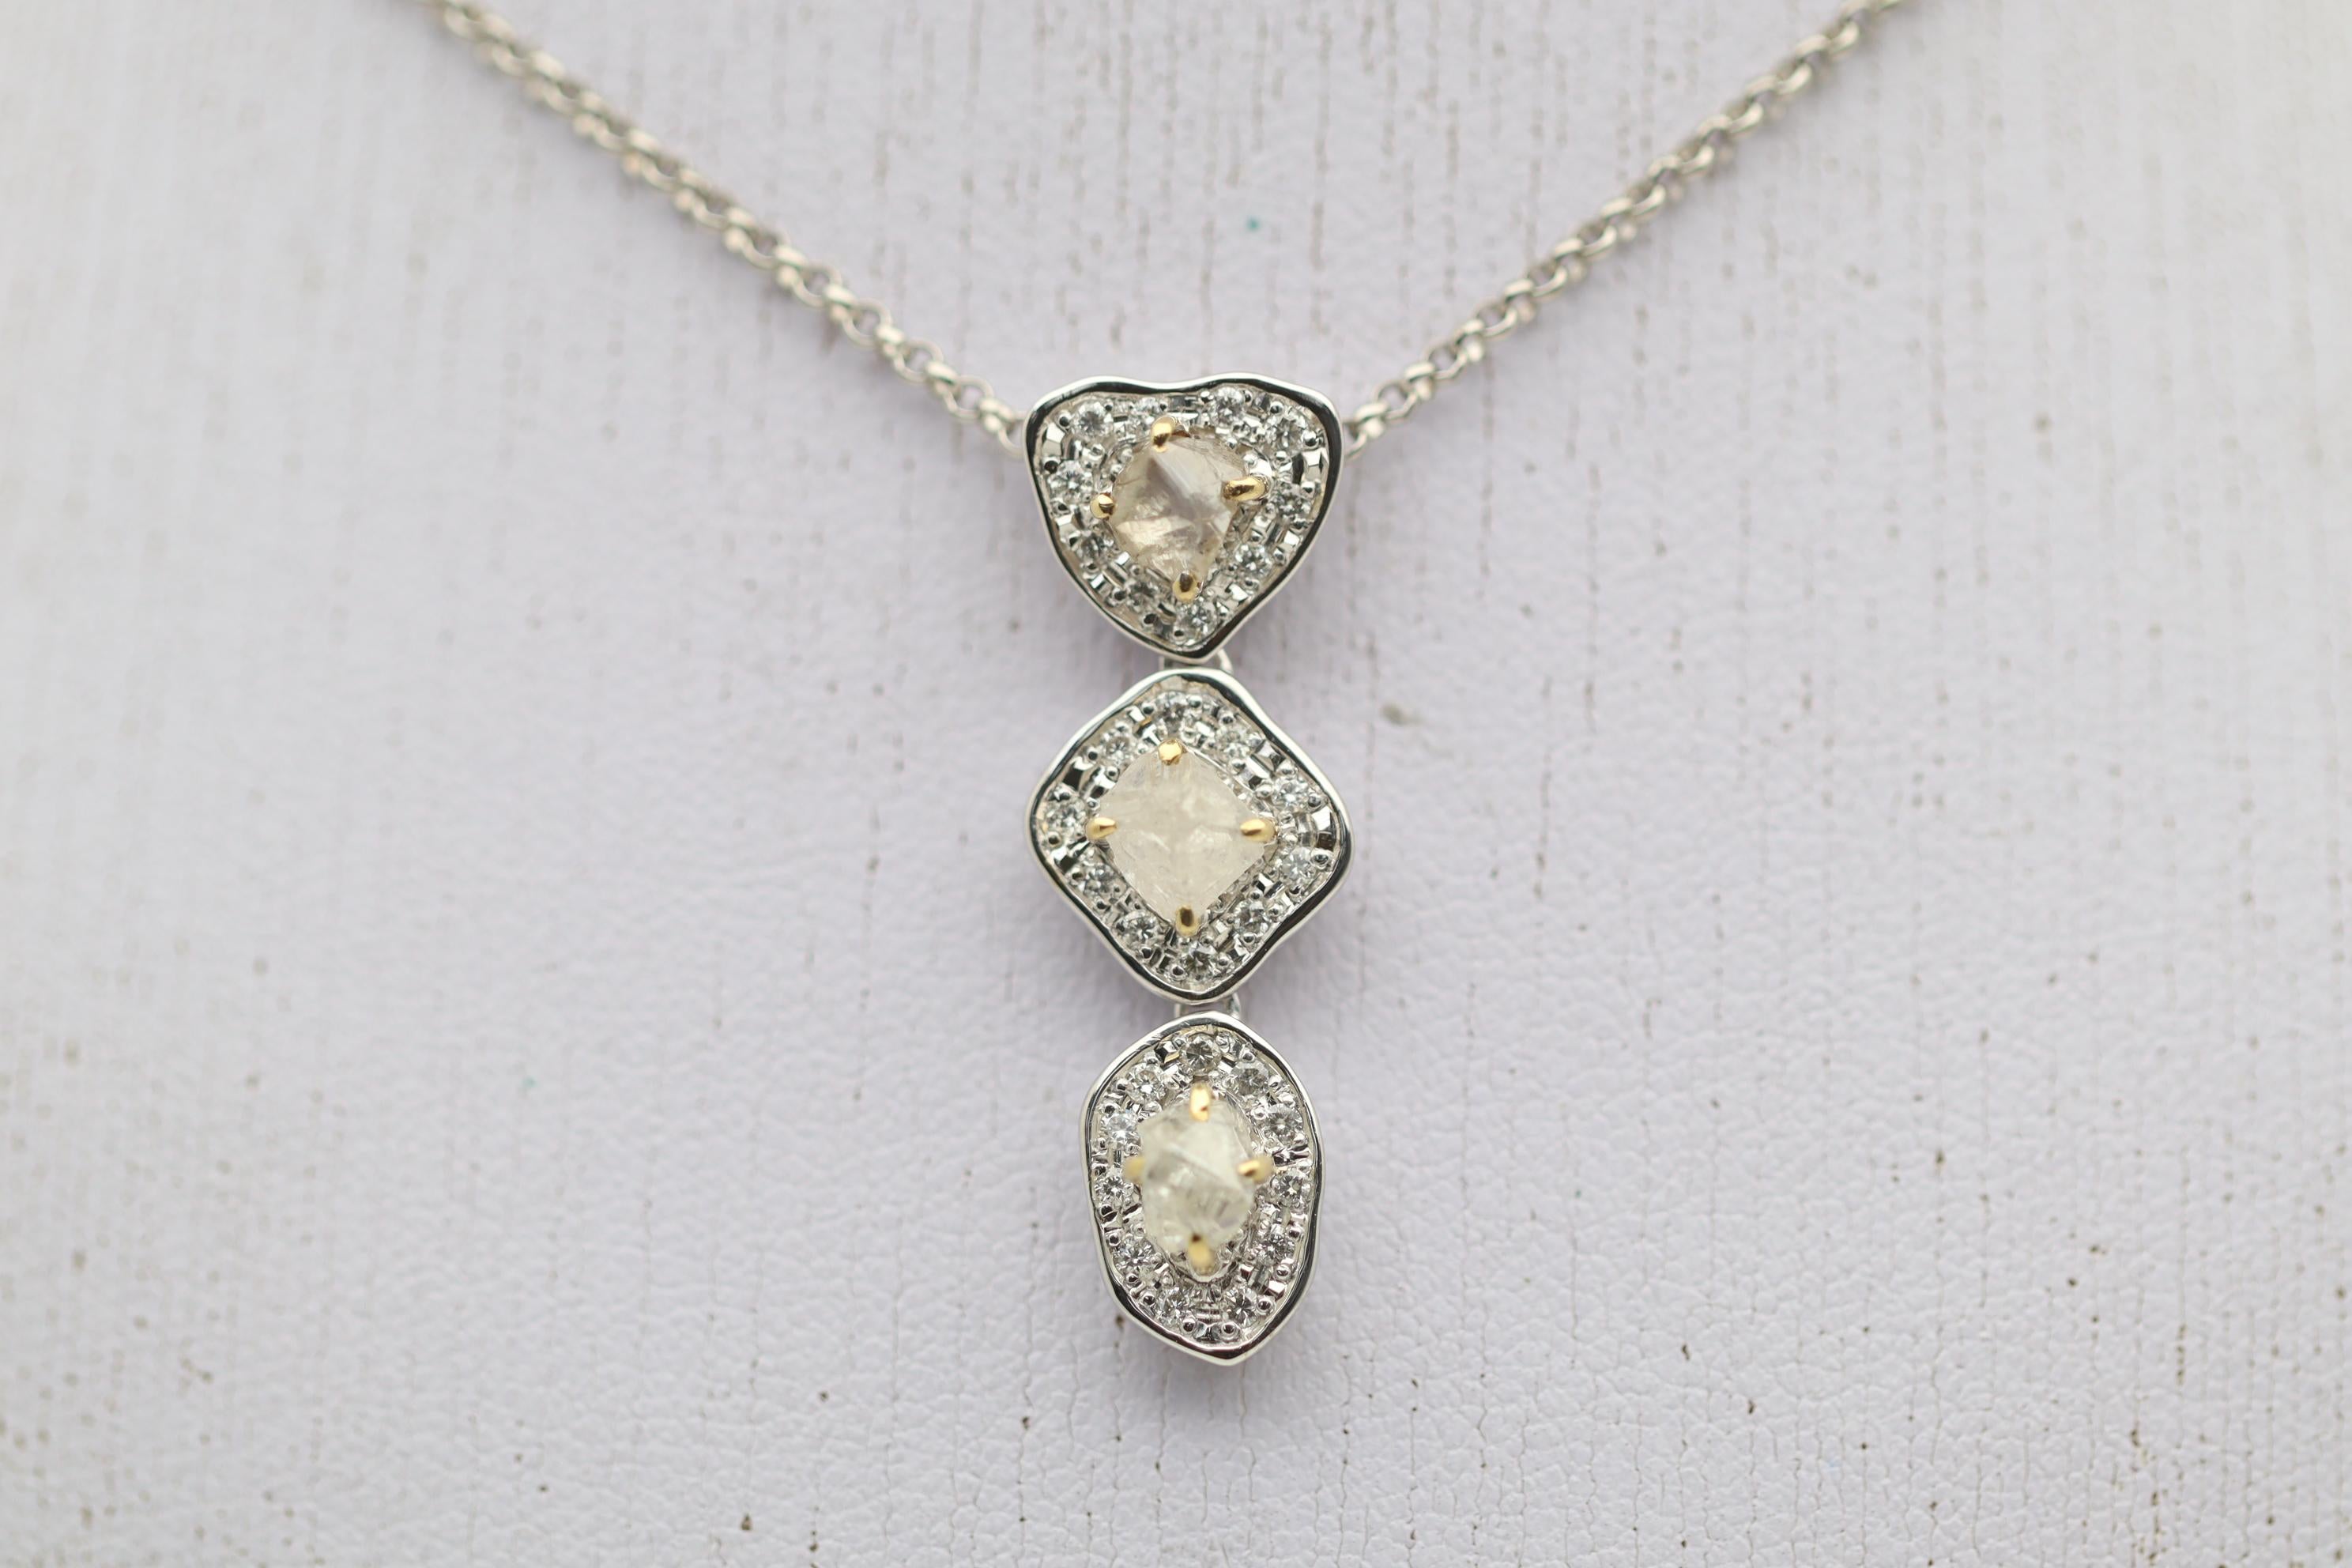 Un pendentif unique, élégant et tout simplement cool avec des diamants ronds traditionnels taille brillant et 3 diamants bruts ! Les diamants bruts sont simplement des diamants avant qu'ils ne soient taillés ou polis. Ils sont dans leur forme